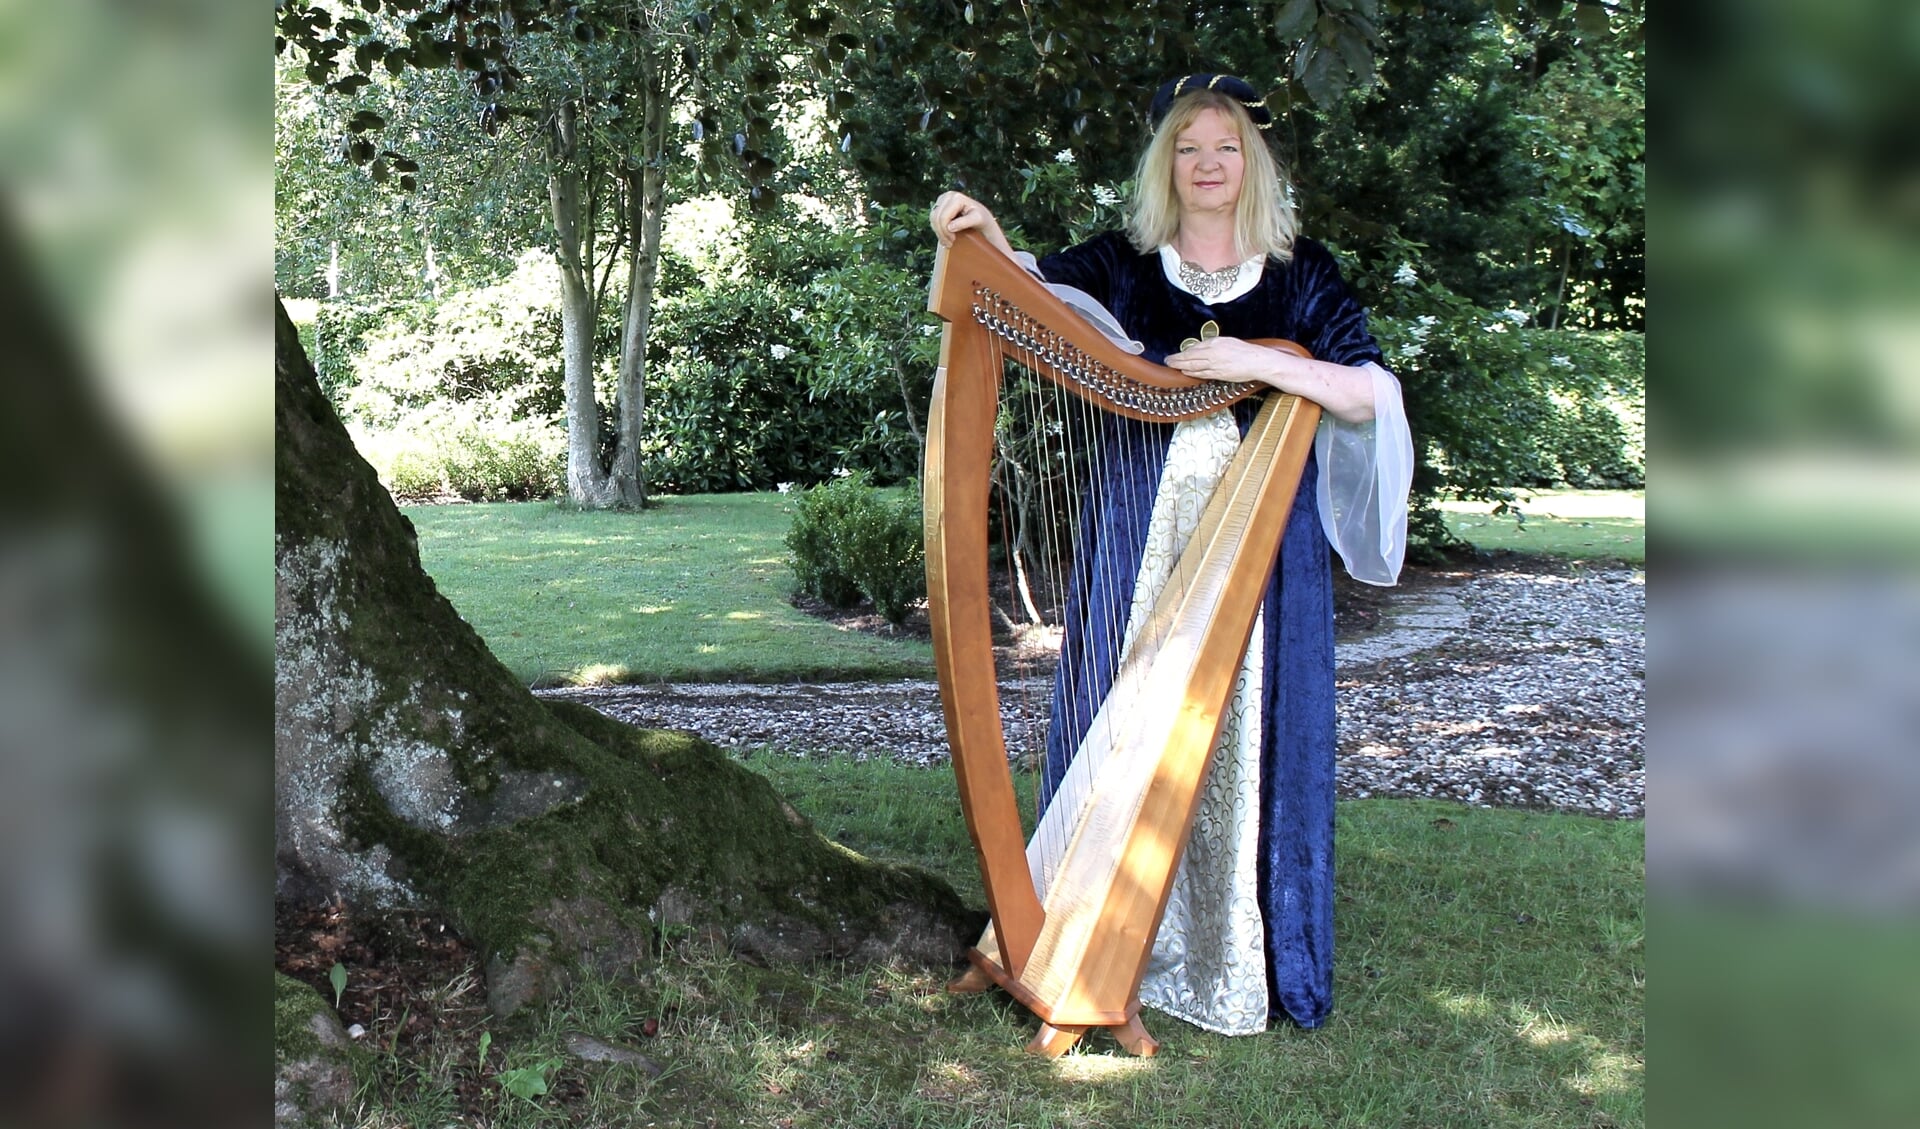 Harpiste Regina Ederveen geeft zaterdagochtend 17 juli een koffieconcert op de binnenplaats van het Voerman Stadsmuseum Hattem.